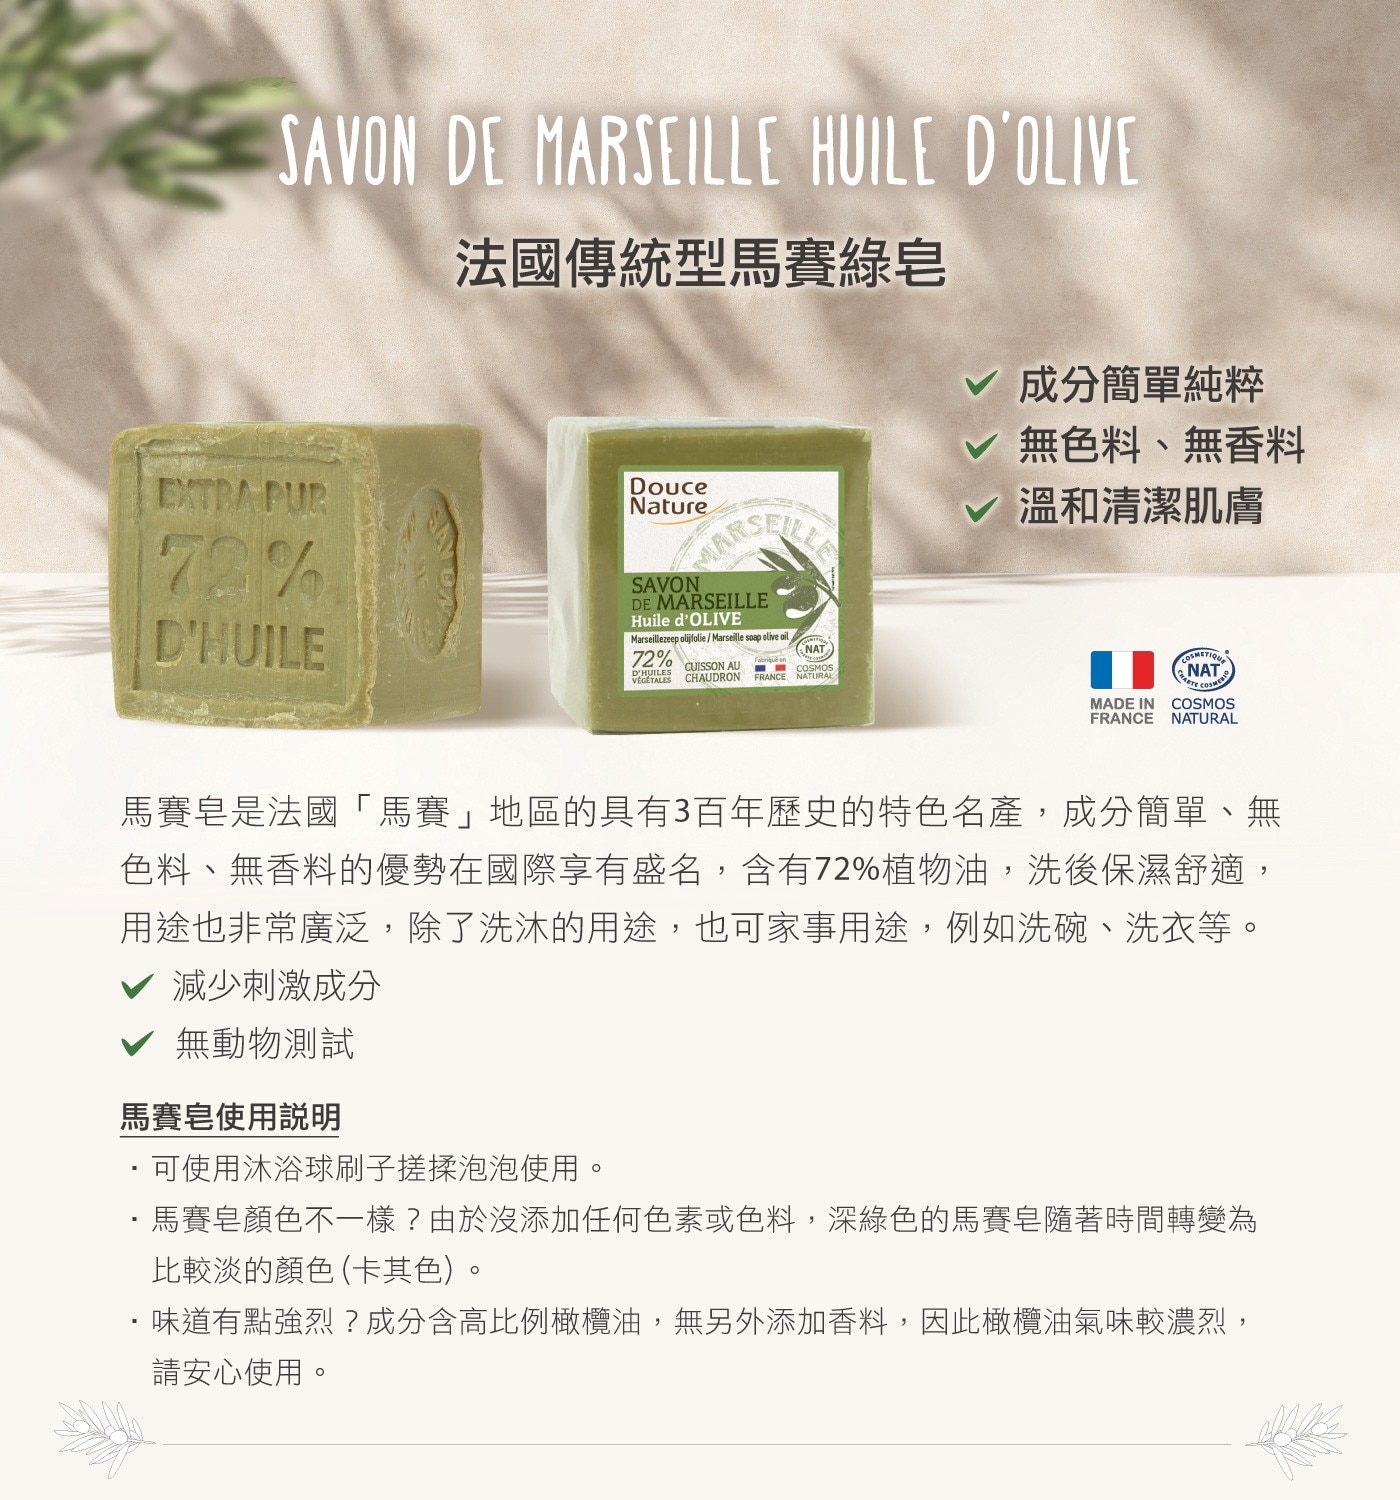 Douce Nature 法國馬賽皂，法國原裝，成分單純，無香料、無色料。